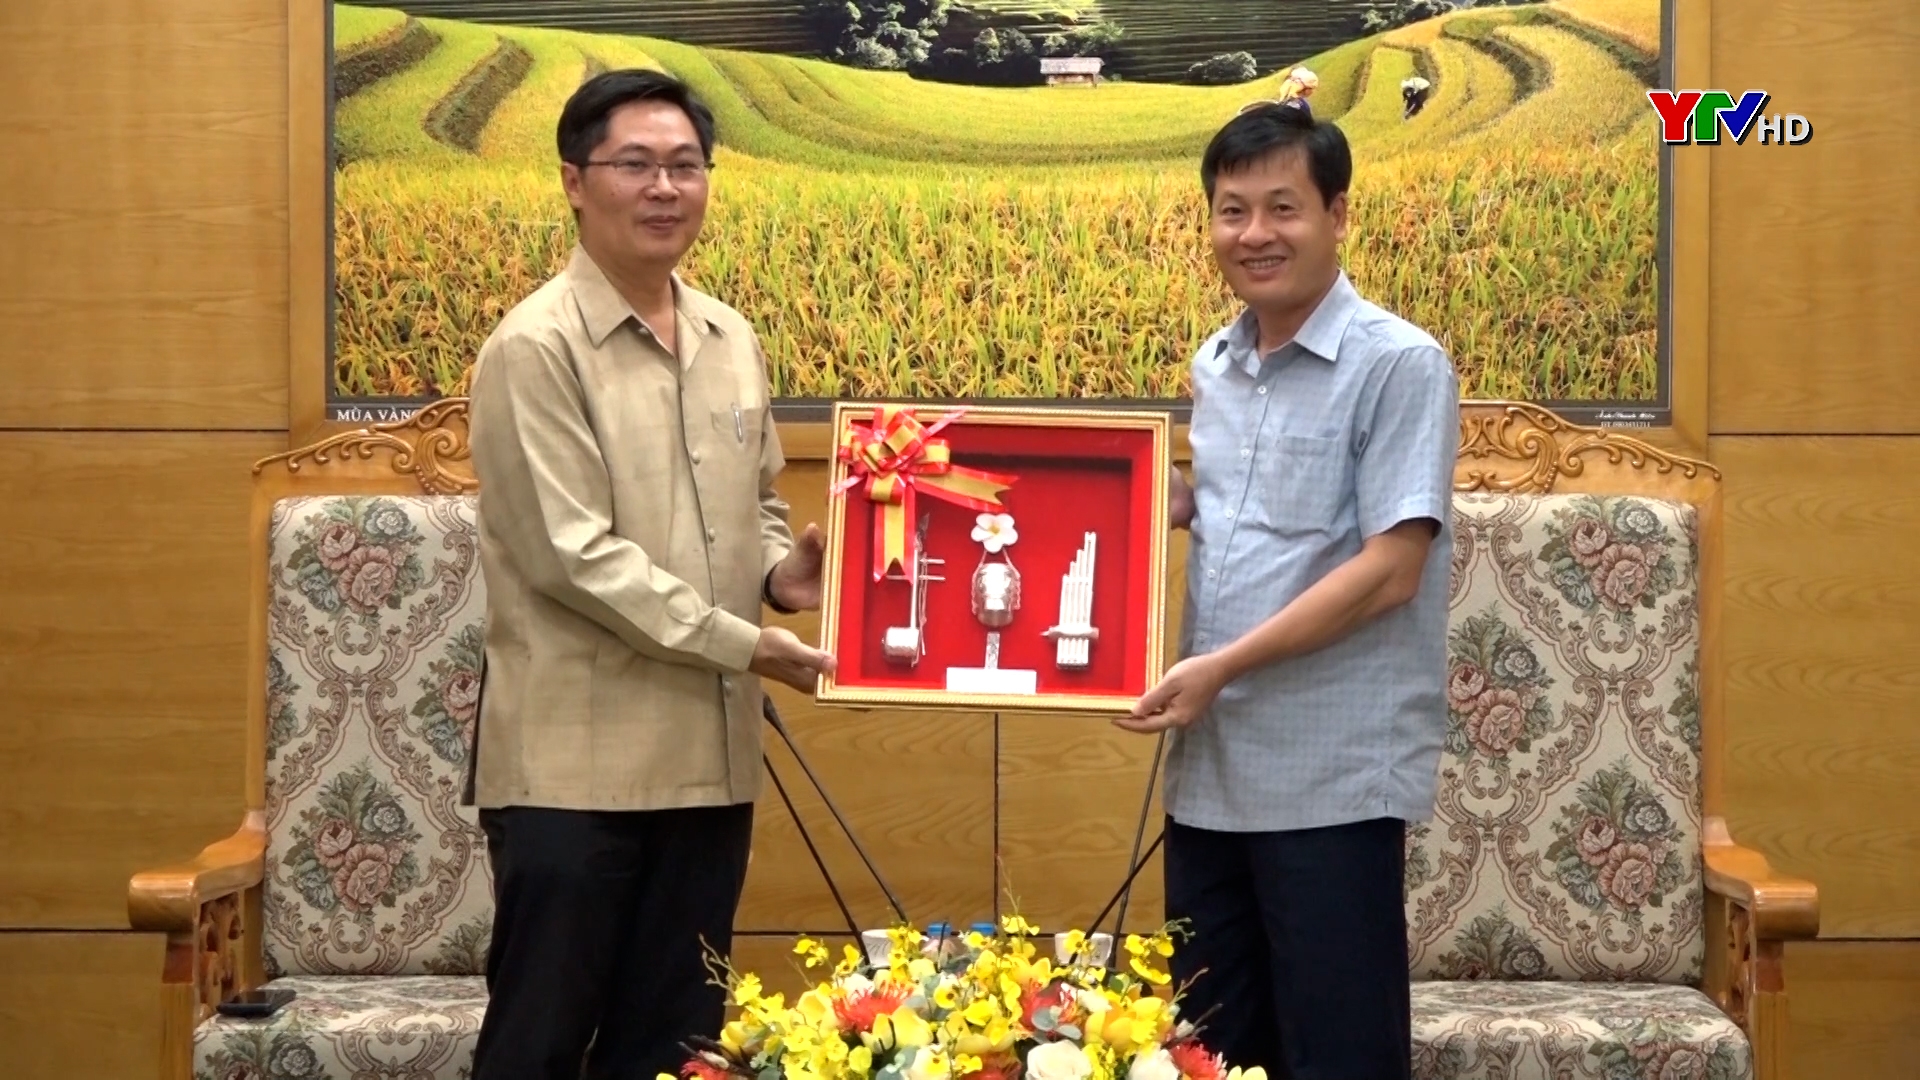 Đoàn công tác Văn phòng Chính quyền tỉnh Viêng Chăn chào xã giao lãnh đạo UBND tỉnh